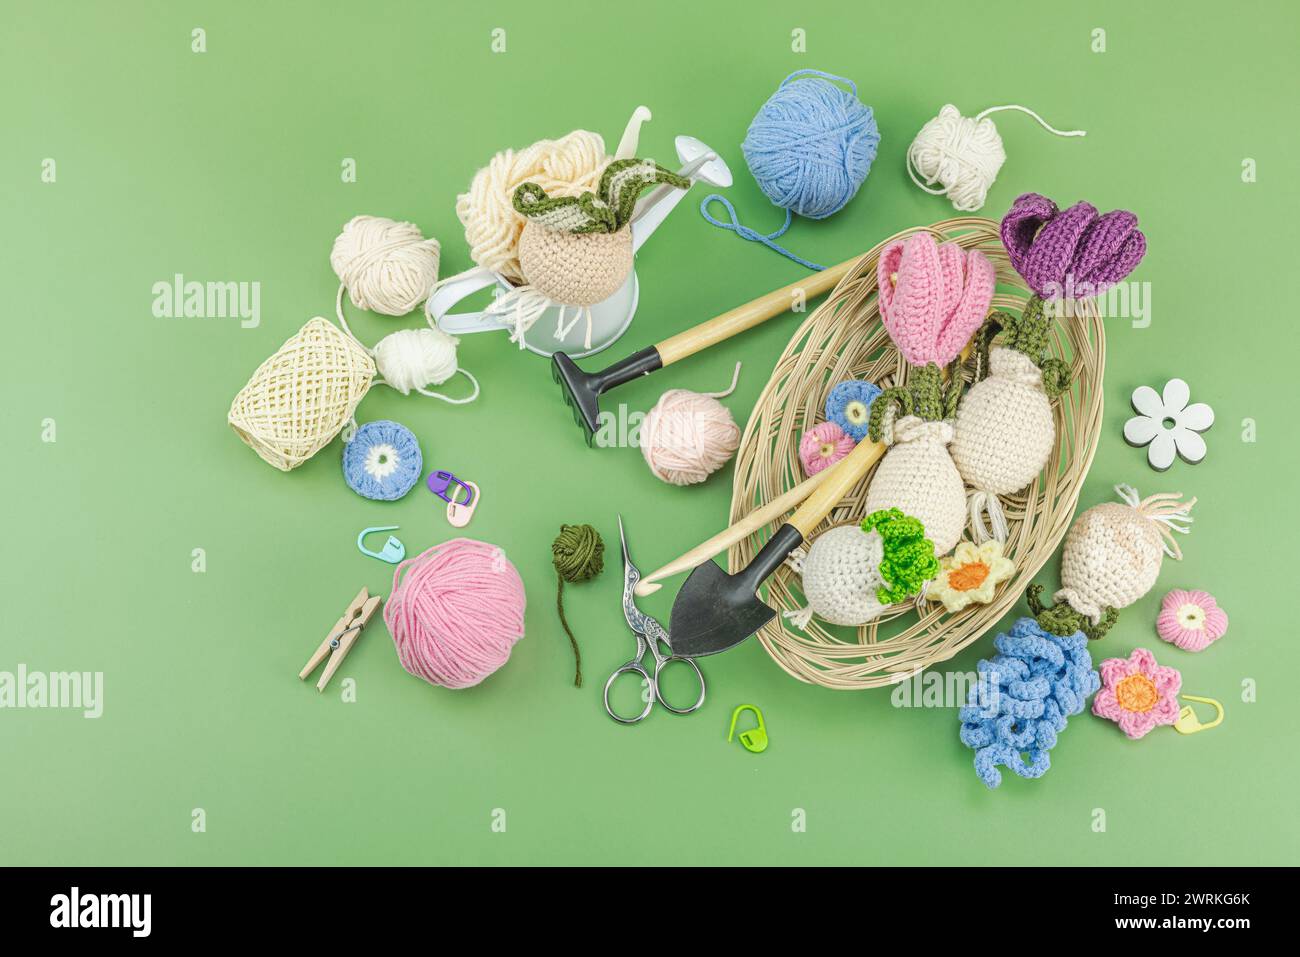 Frühjahrspflanz- und Gartenkonzept. Handgemachte Blumen mit Birnen, Miniwerkzeugen, Gießkanne und Eimern. Pastellgrüner Hintergrund, Draufsicht Stockfoto